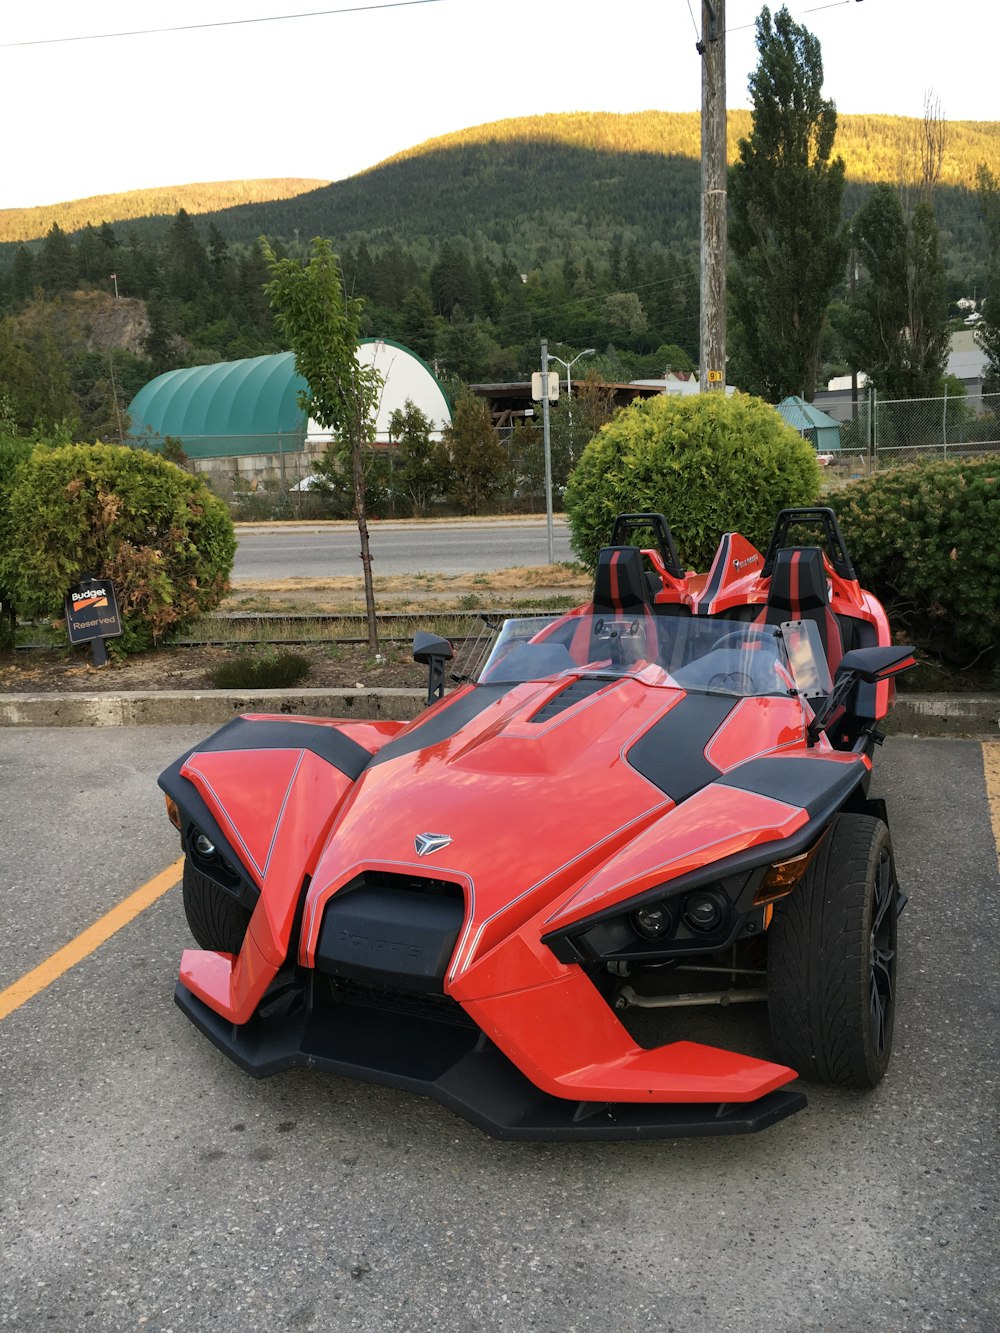 Lamborghini Aventador rossa e nera su strada durante il giorno